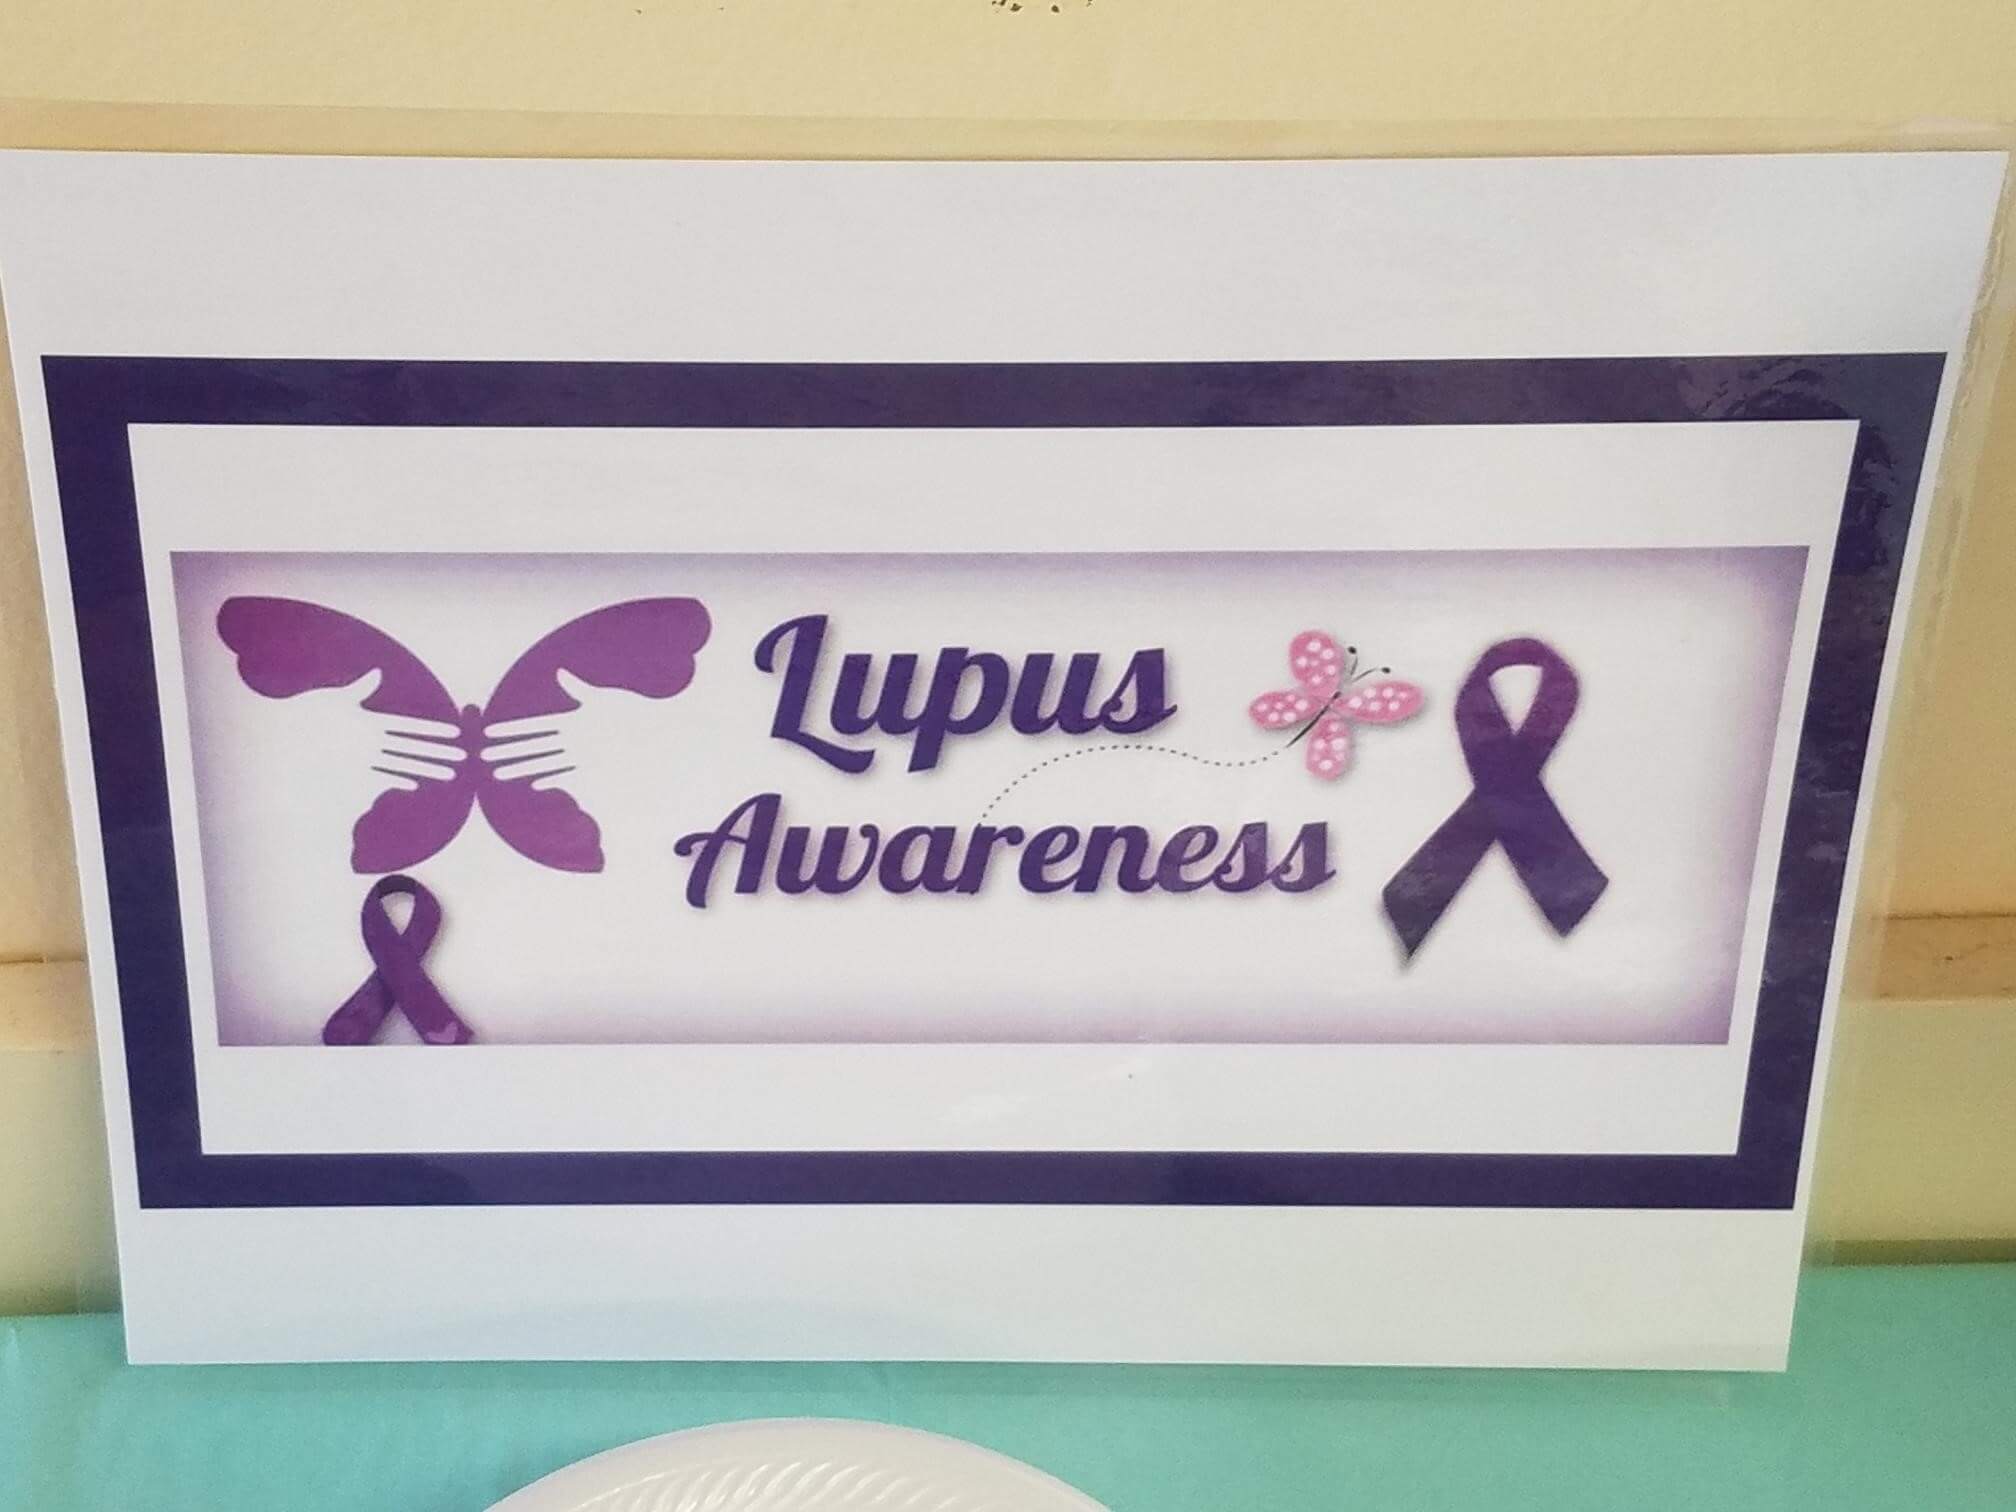 Lupus Awareness Poster